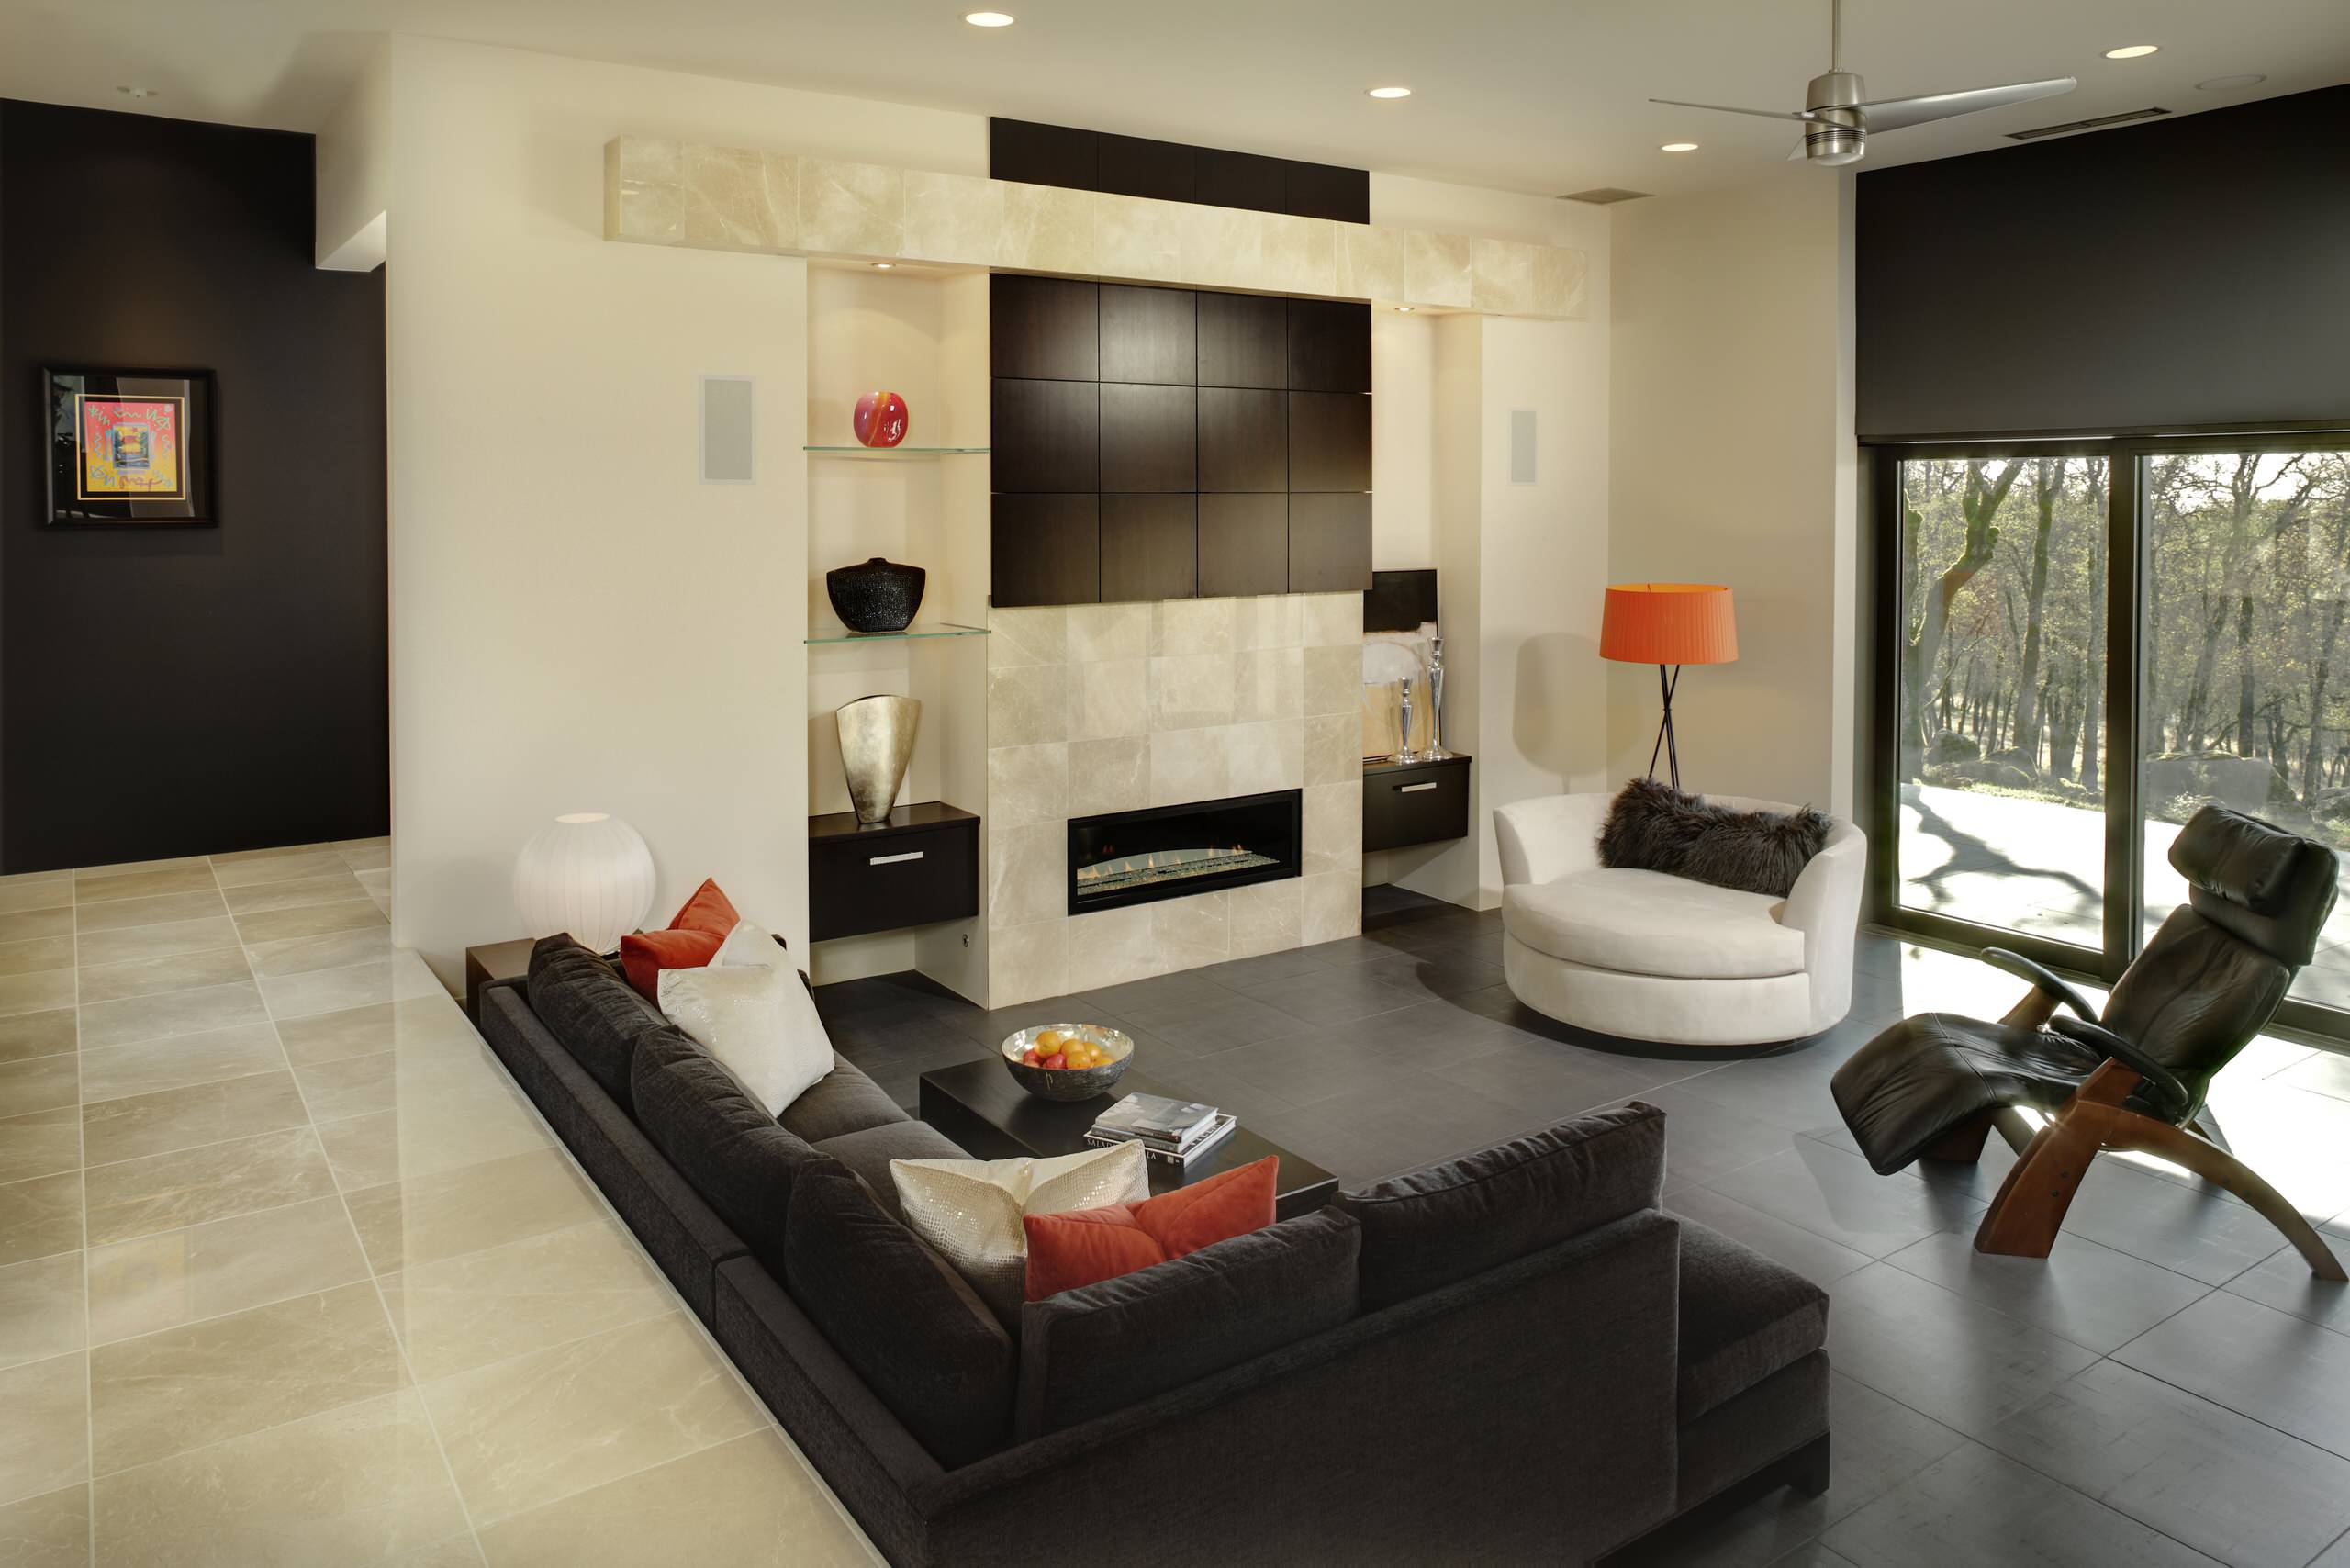 Sunken Living Room Home Design Ideas